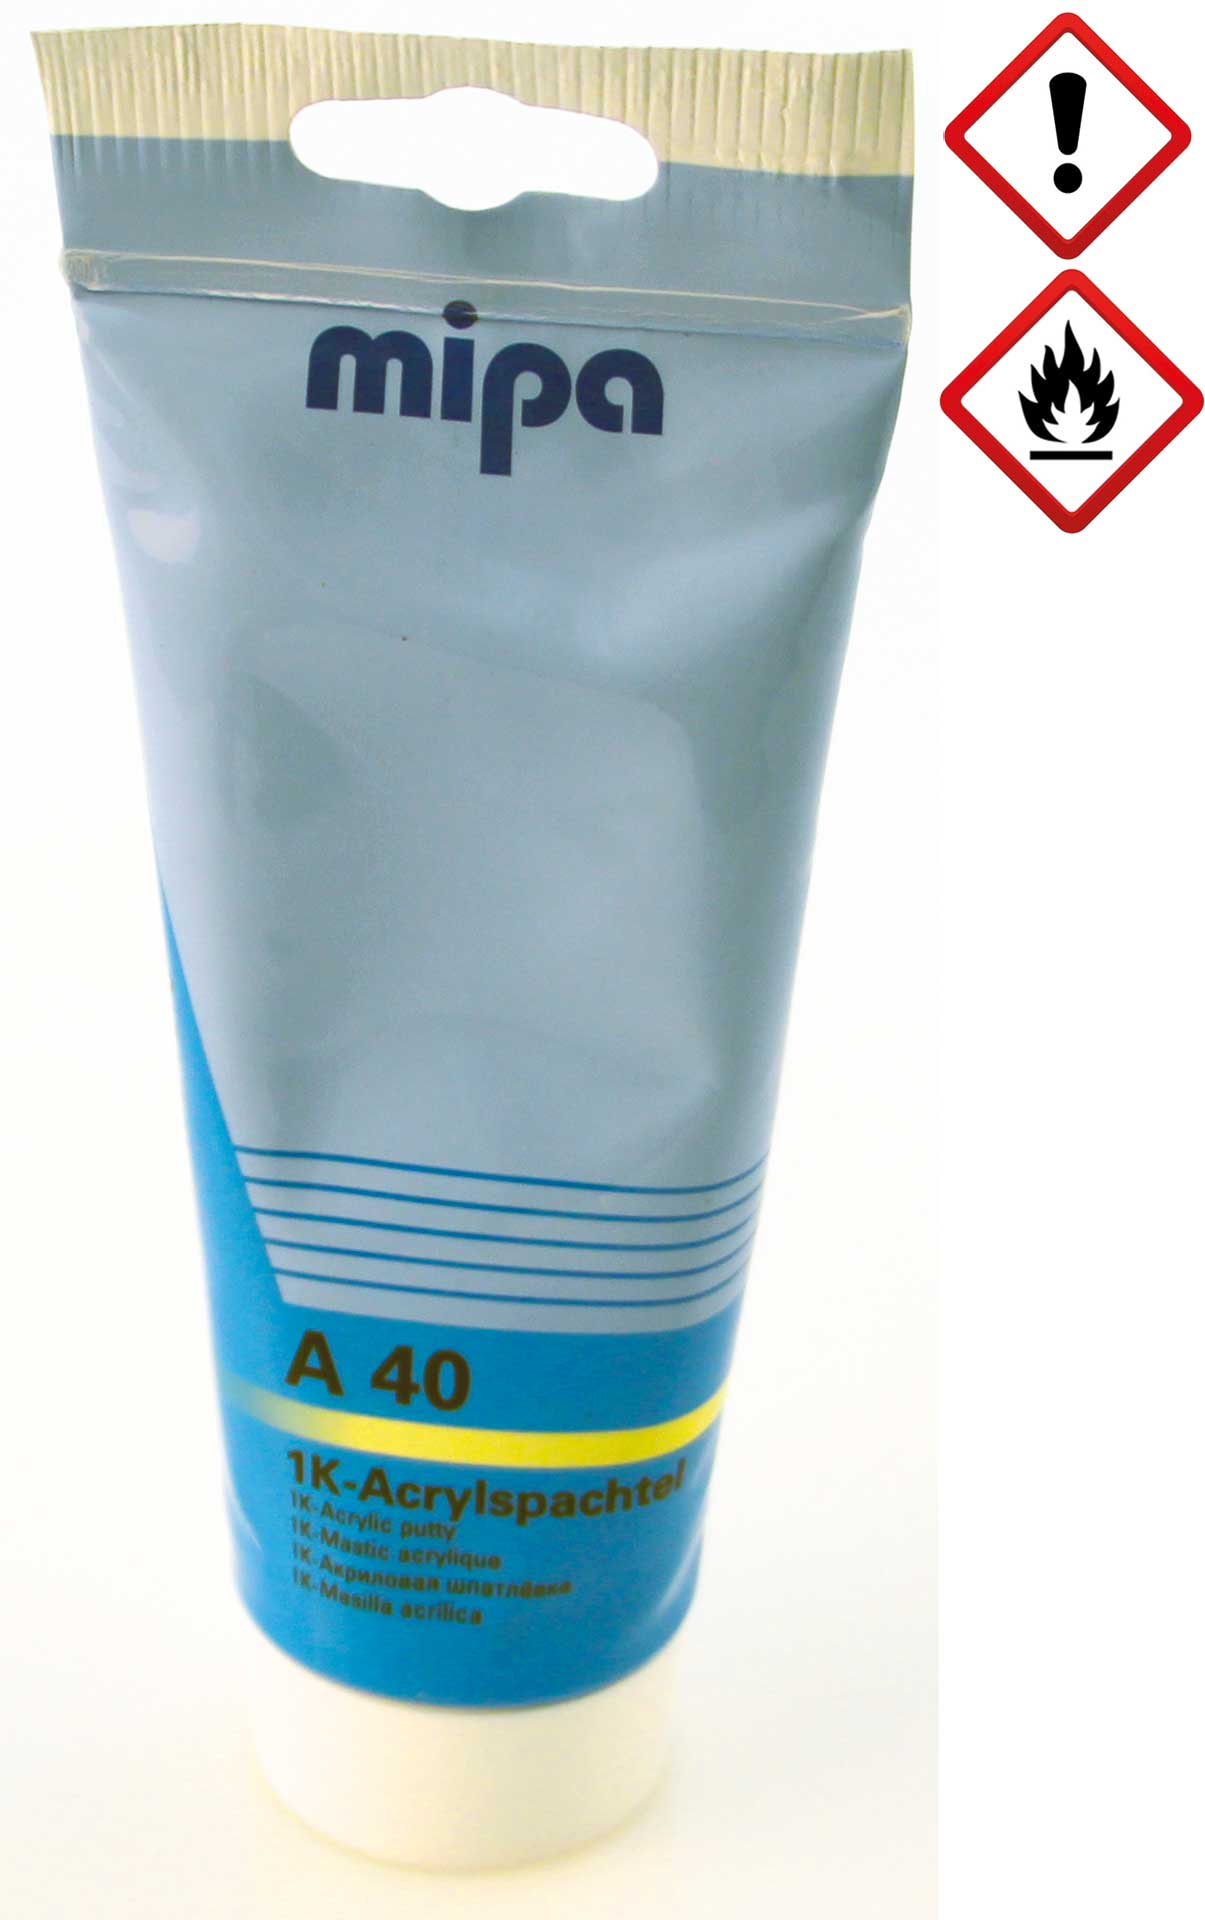 mipa A 40 1K-Acrylspachtel Tube 250g